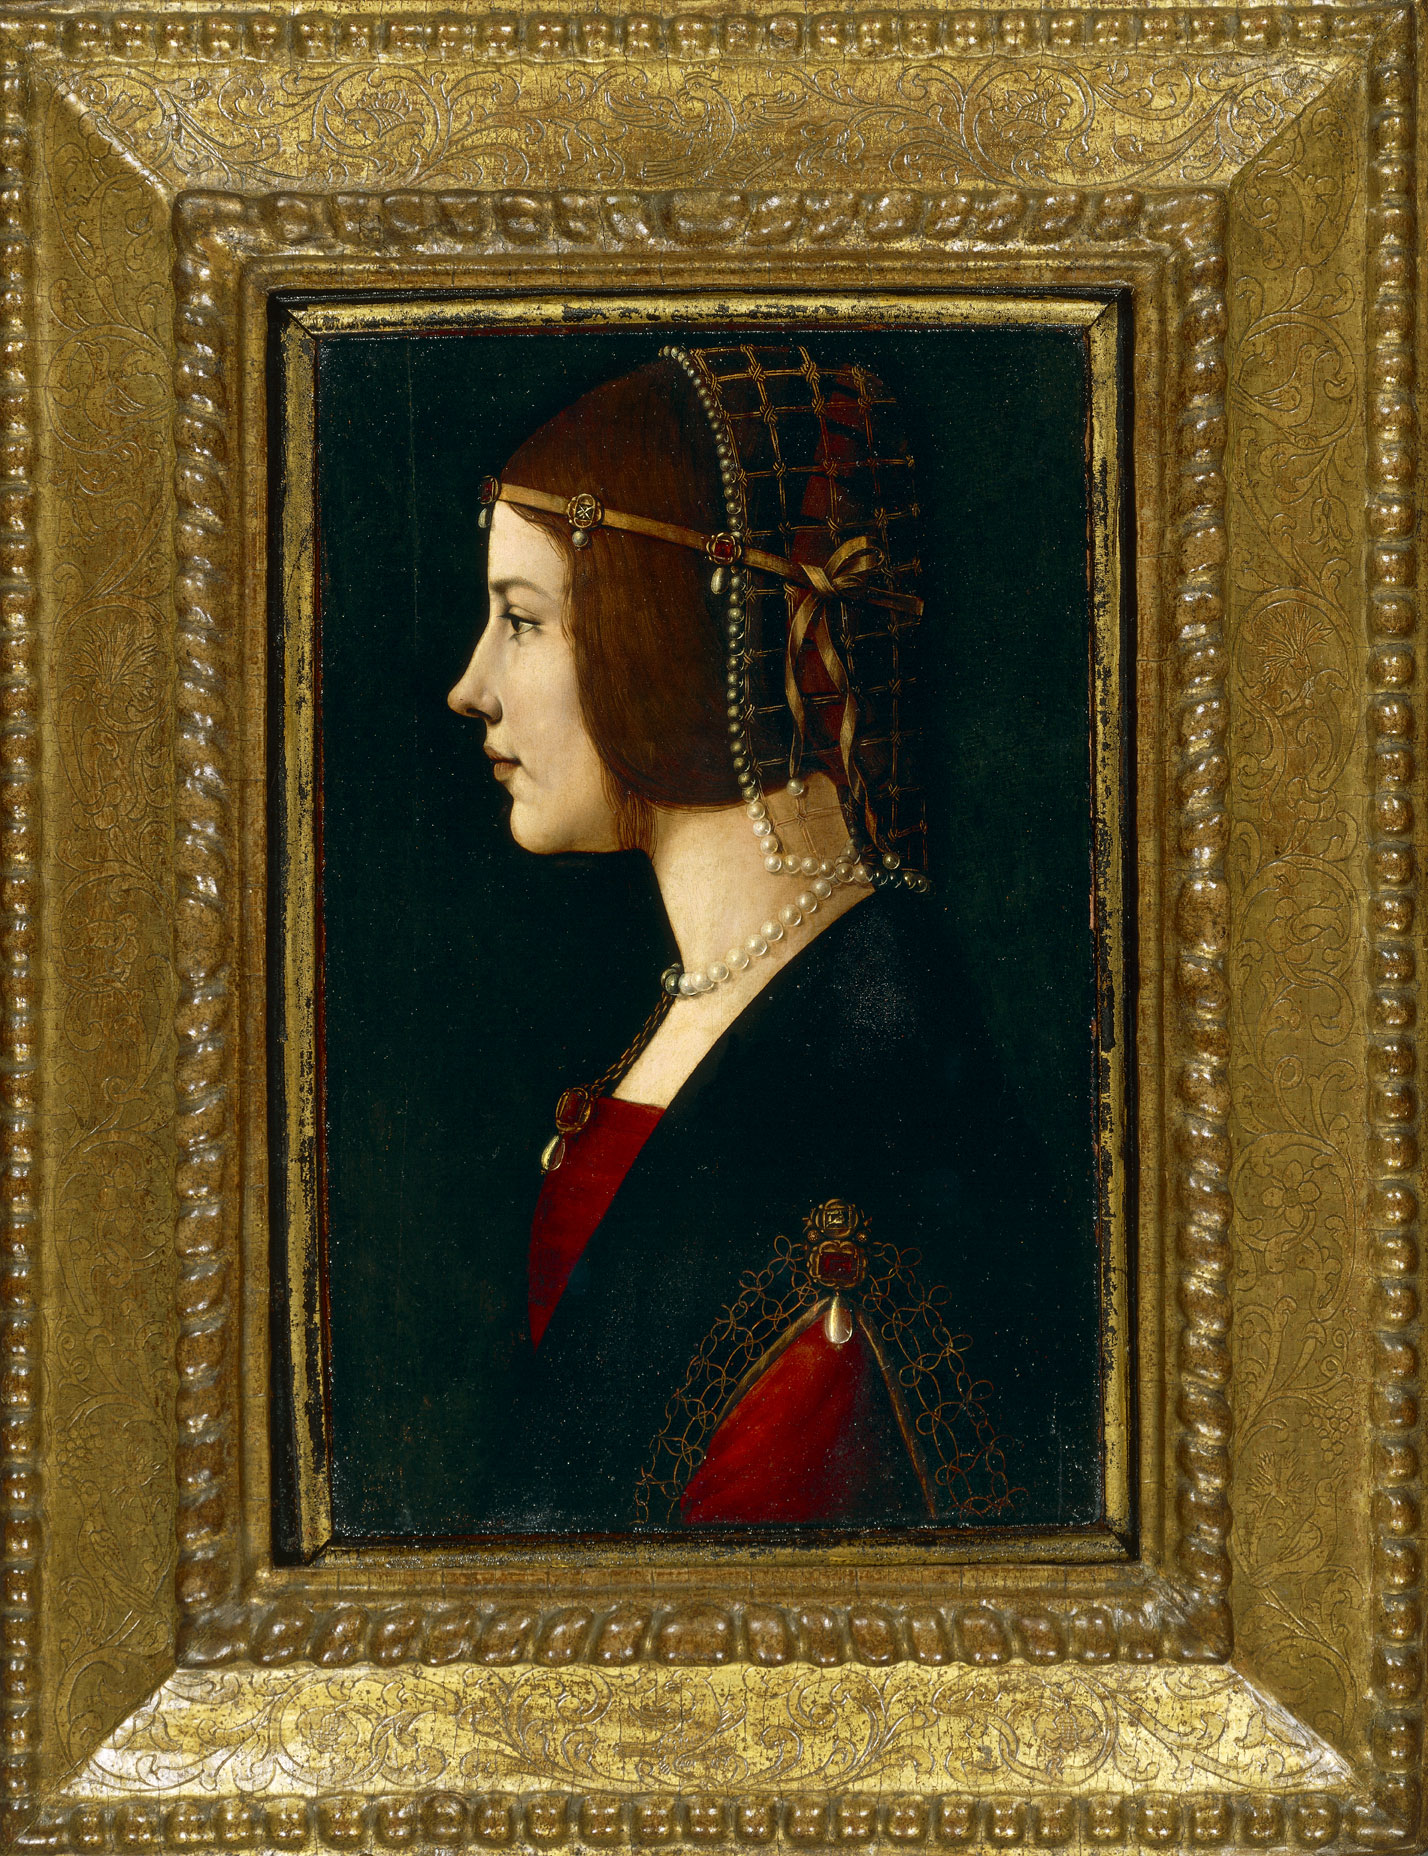 Ritratto di dama, Giovanni Ambrogio De Predis, tempera e olio su tavola, 1485-1500 Il ritratto viene inizialmente attribuito a Leonardo e associato al 